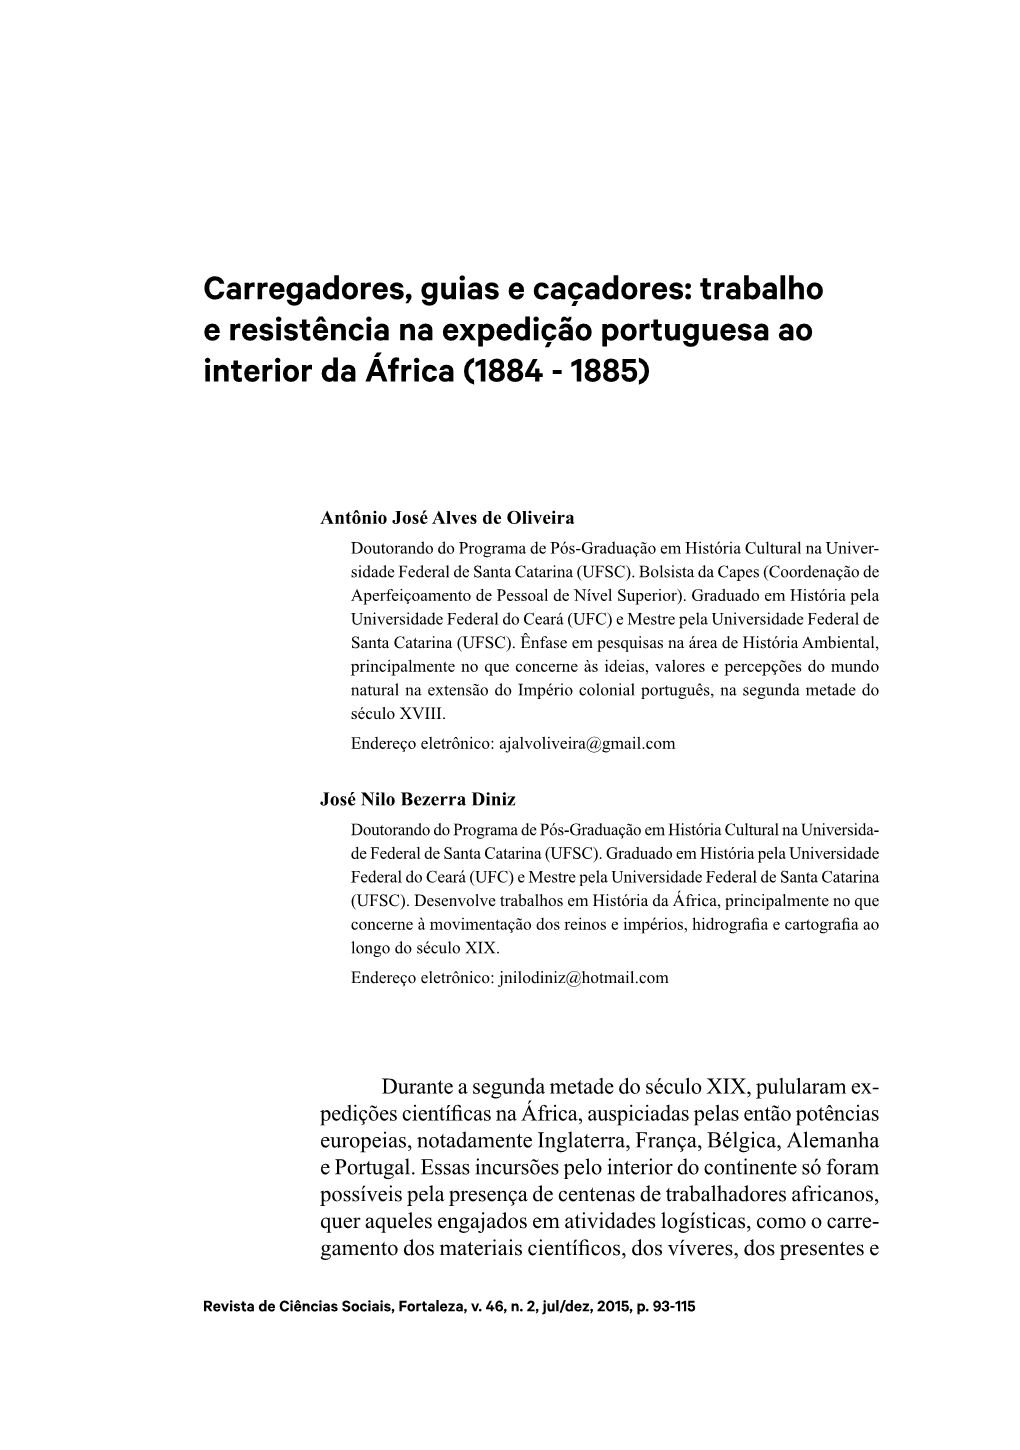 Carregadores, Guias E Caçadores: Trabalho E Resistência Na Expedição Portuguesa Ao Interior Da África (1884 - 1885)